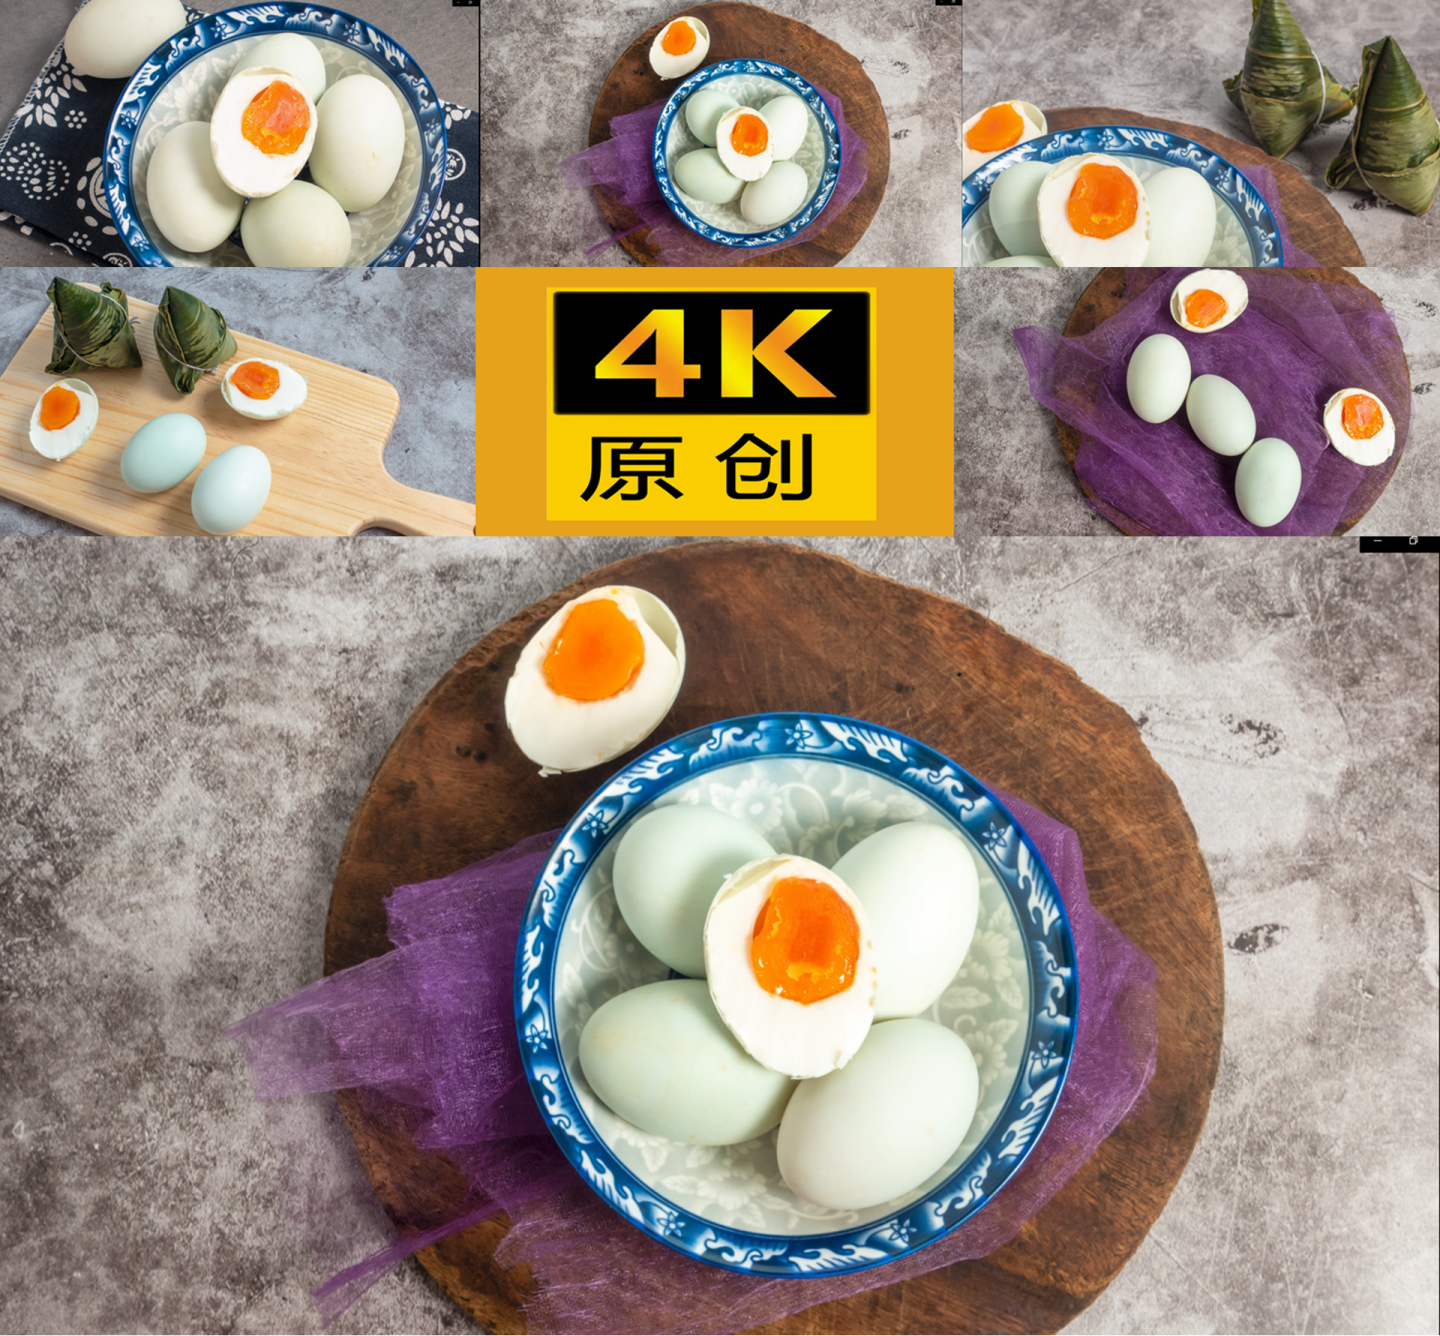 端午节传统食品咸鸭蛋与粽子4k选编合集